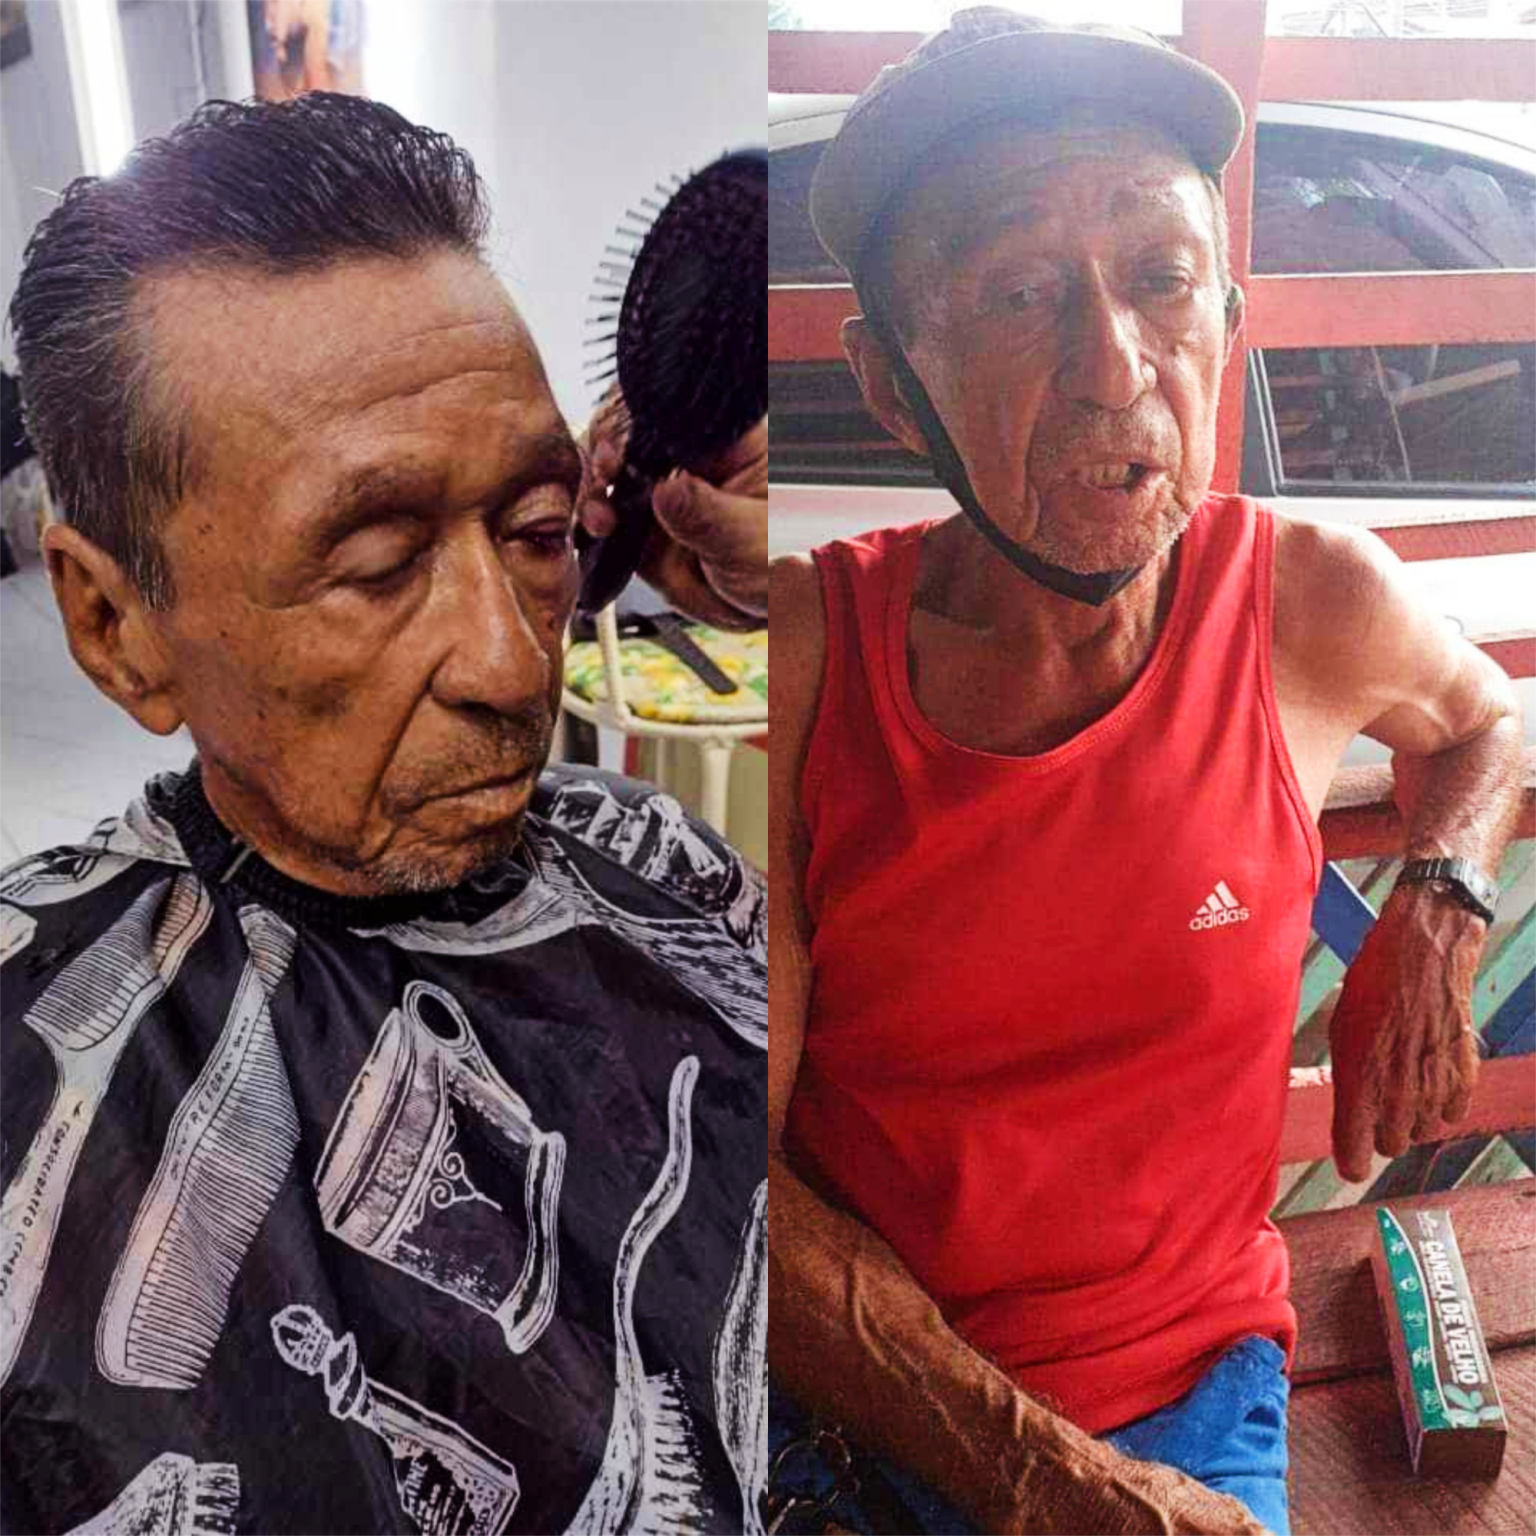 Família faz busca desesperada por idoso de 84 anos que segue desaparecido em Macapá